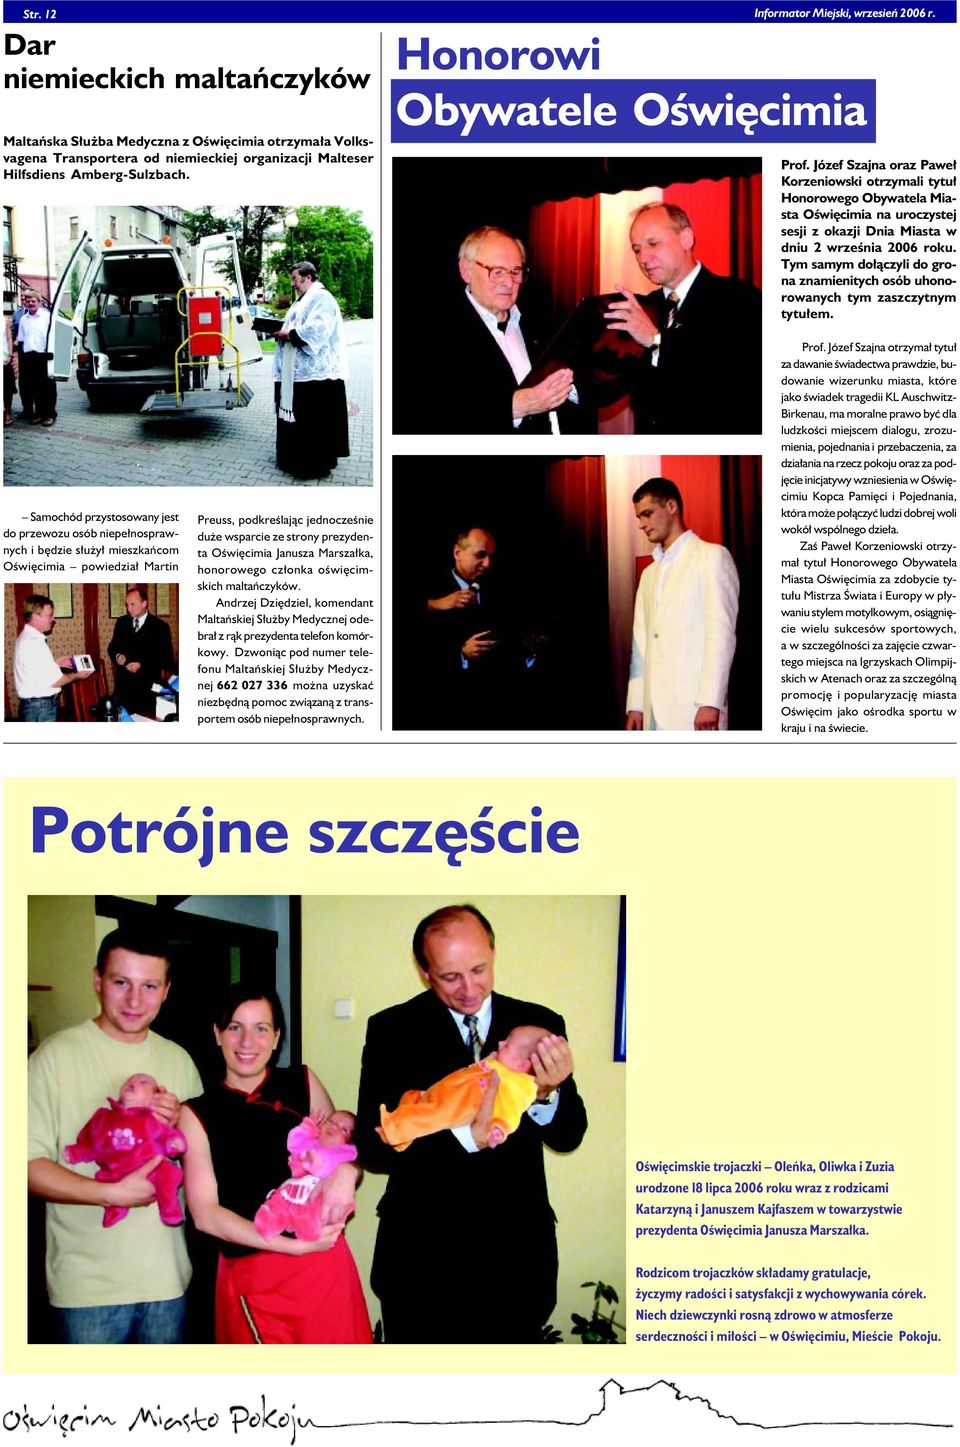 Józef Szajna oraz Paweł Korzeniowski otrzymali tytuł Honorowego Obywatela Miasta Oświęcimia na uroczystej sesji z okazji Dnia Miasta w dniu 2 września 2006 roku.